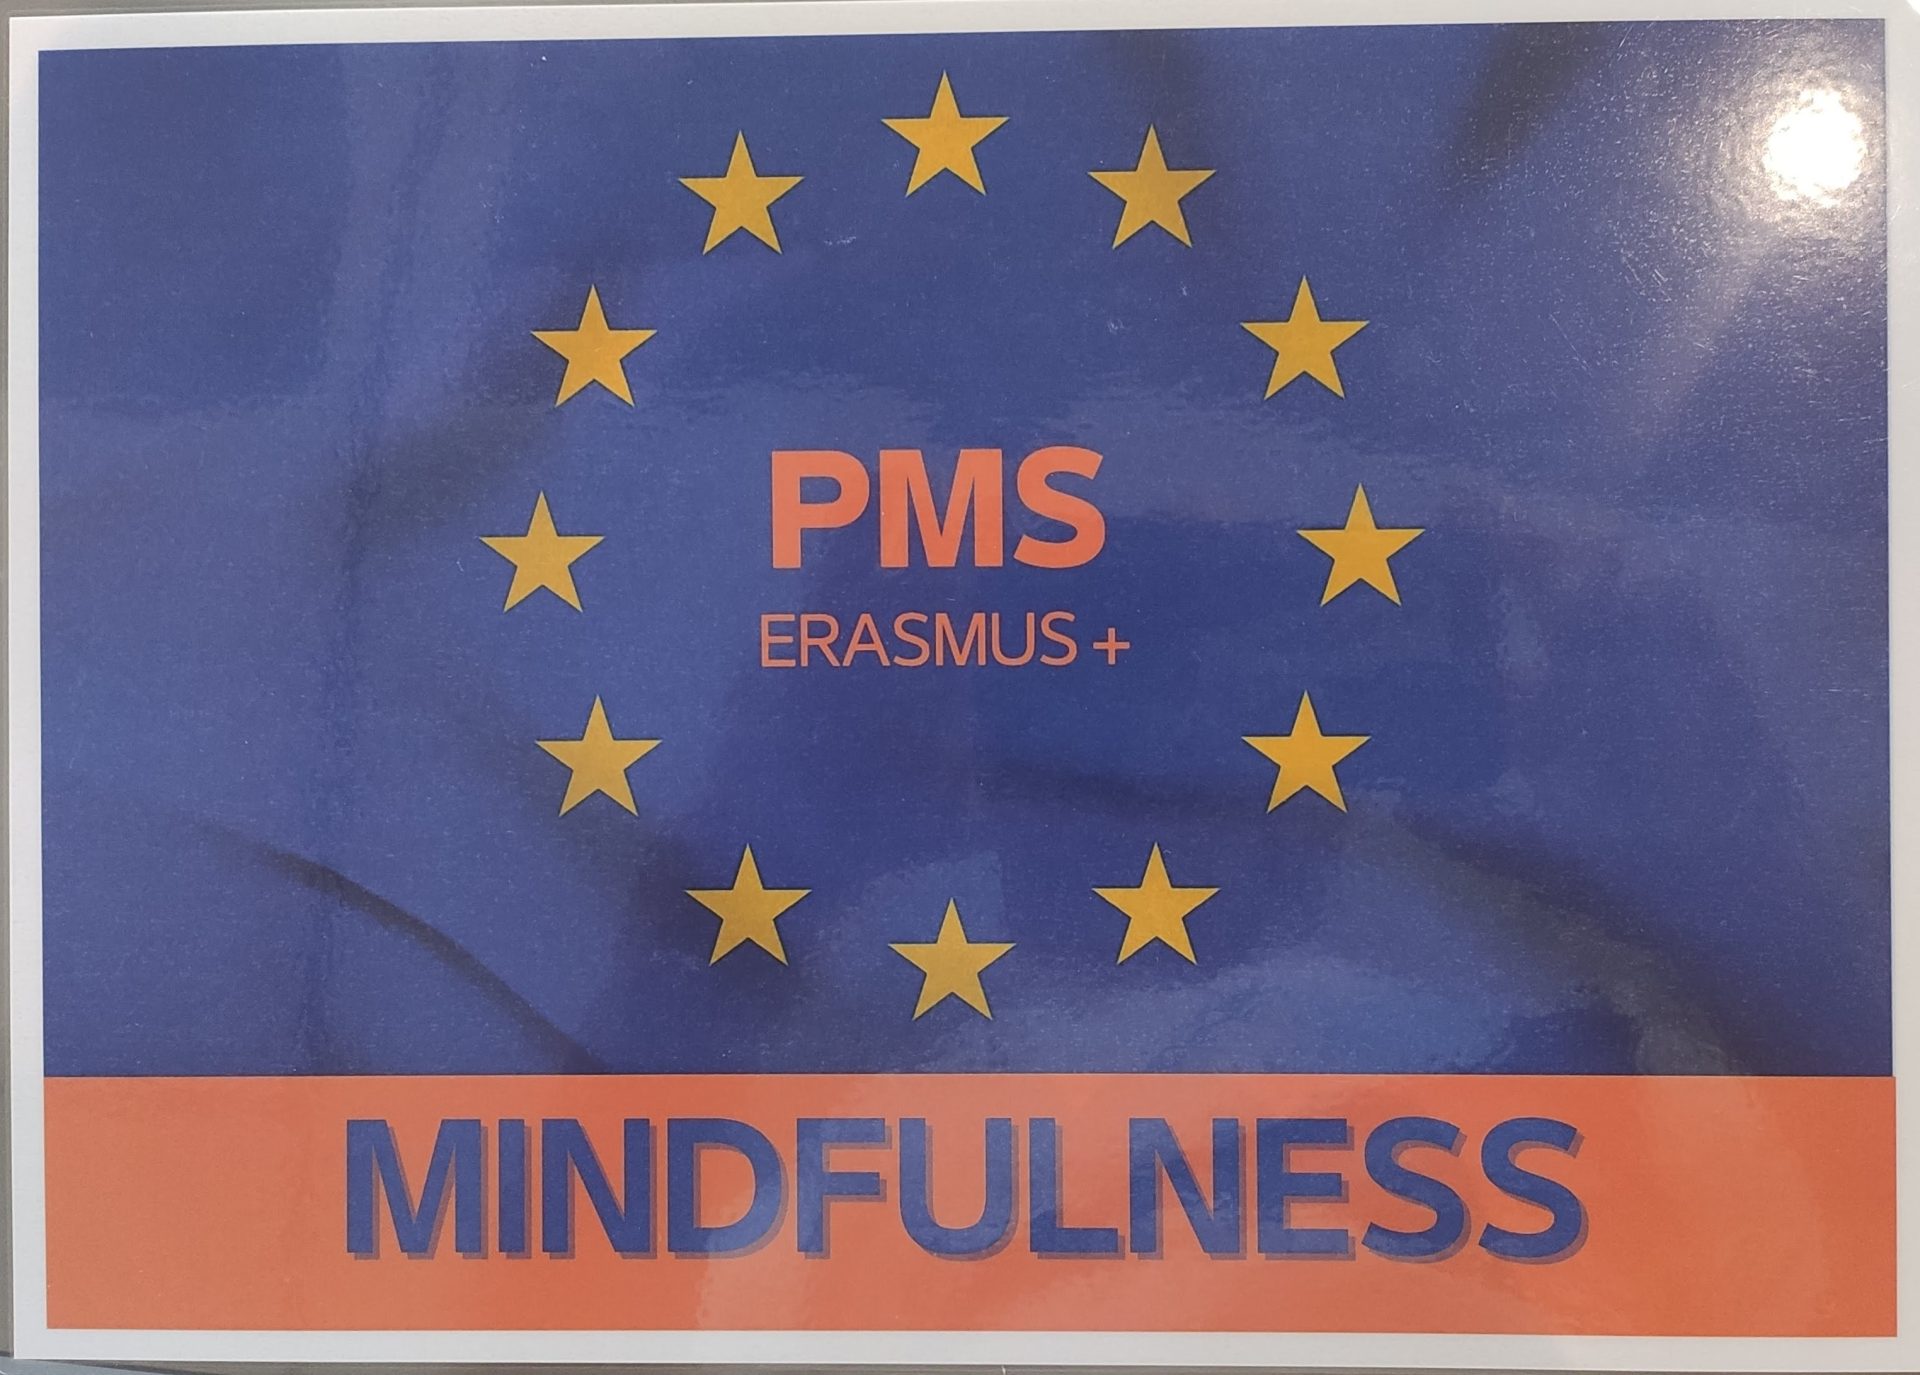 Logo organizatora szkolenia. Napis MINDFULNESS u dołu. Na niebieskim tle flaga Unii Europejskiej a w środku napis PMS Erasmus+.